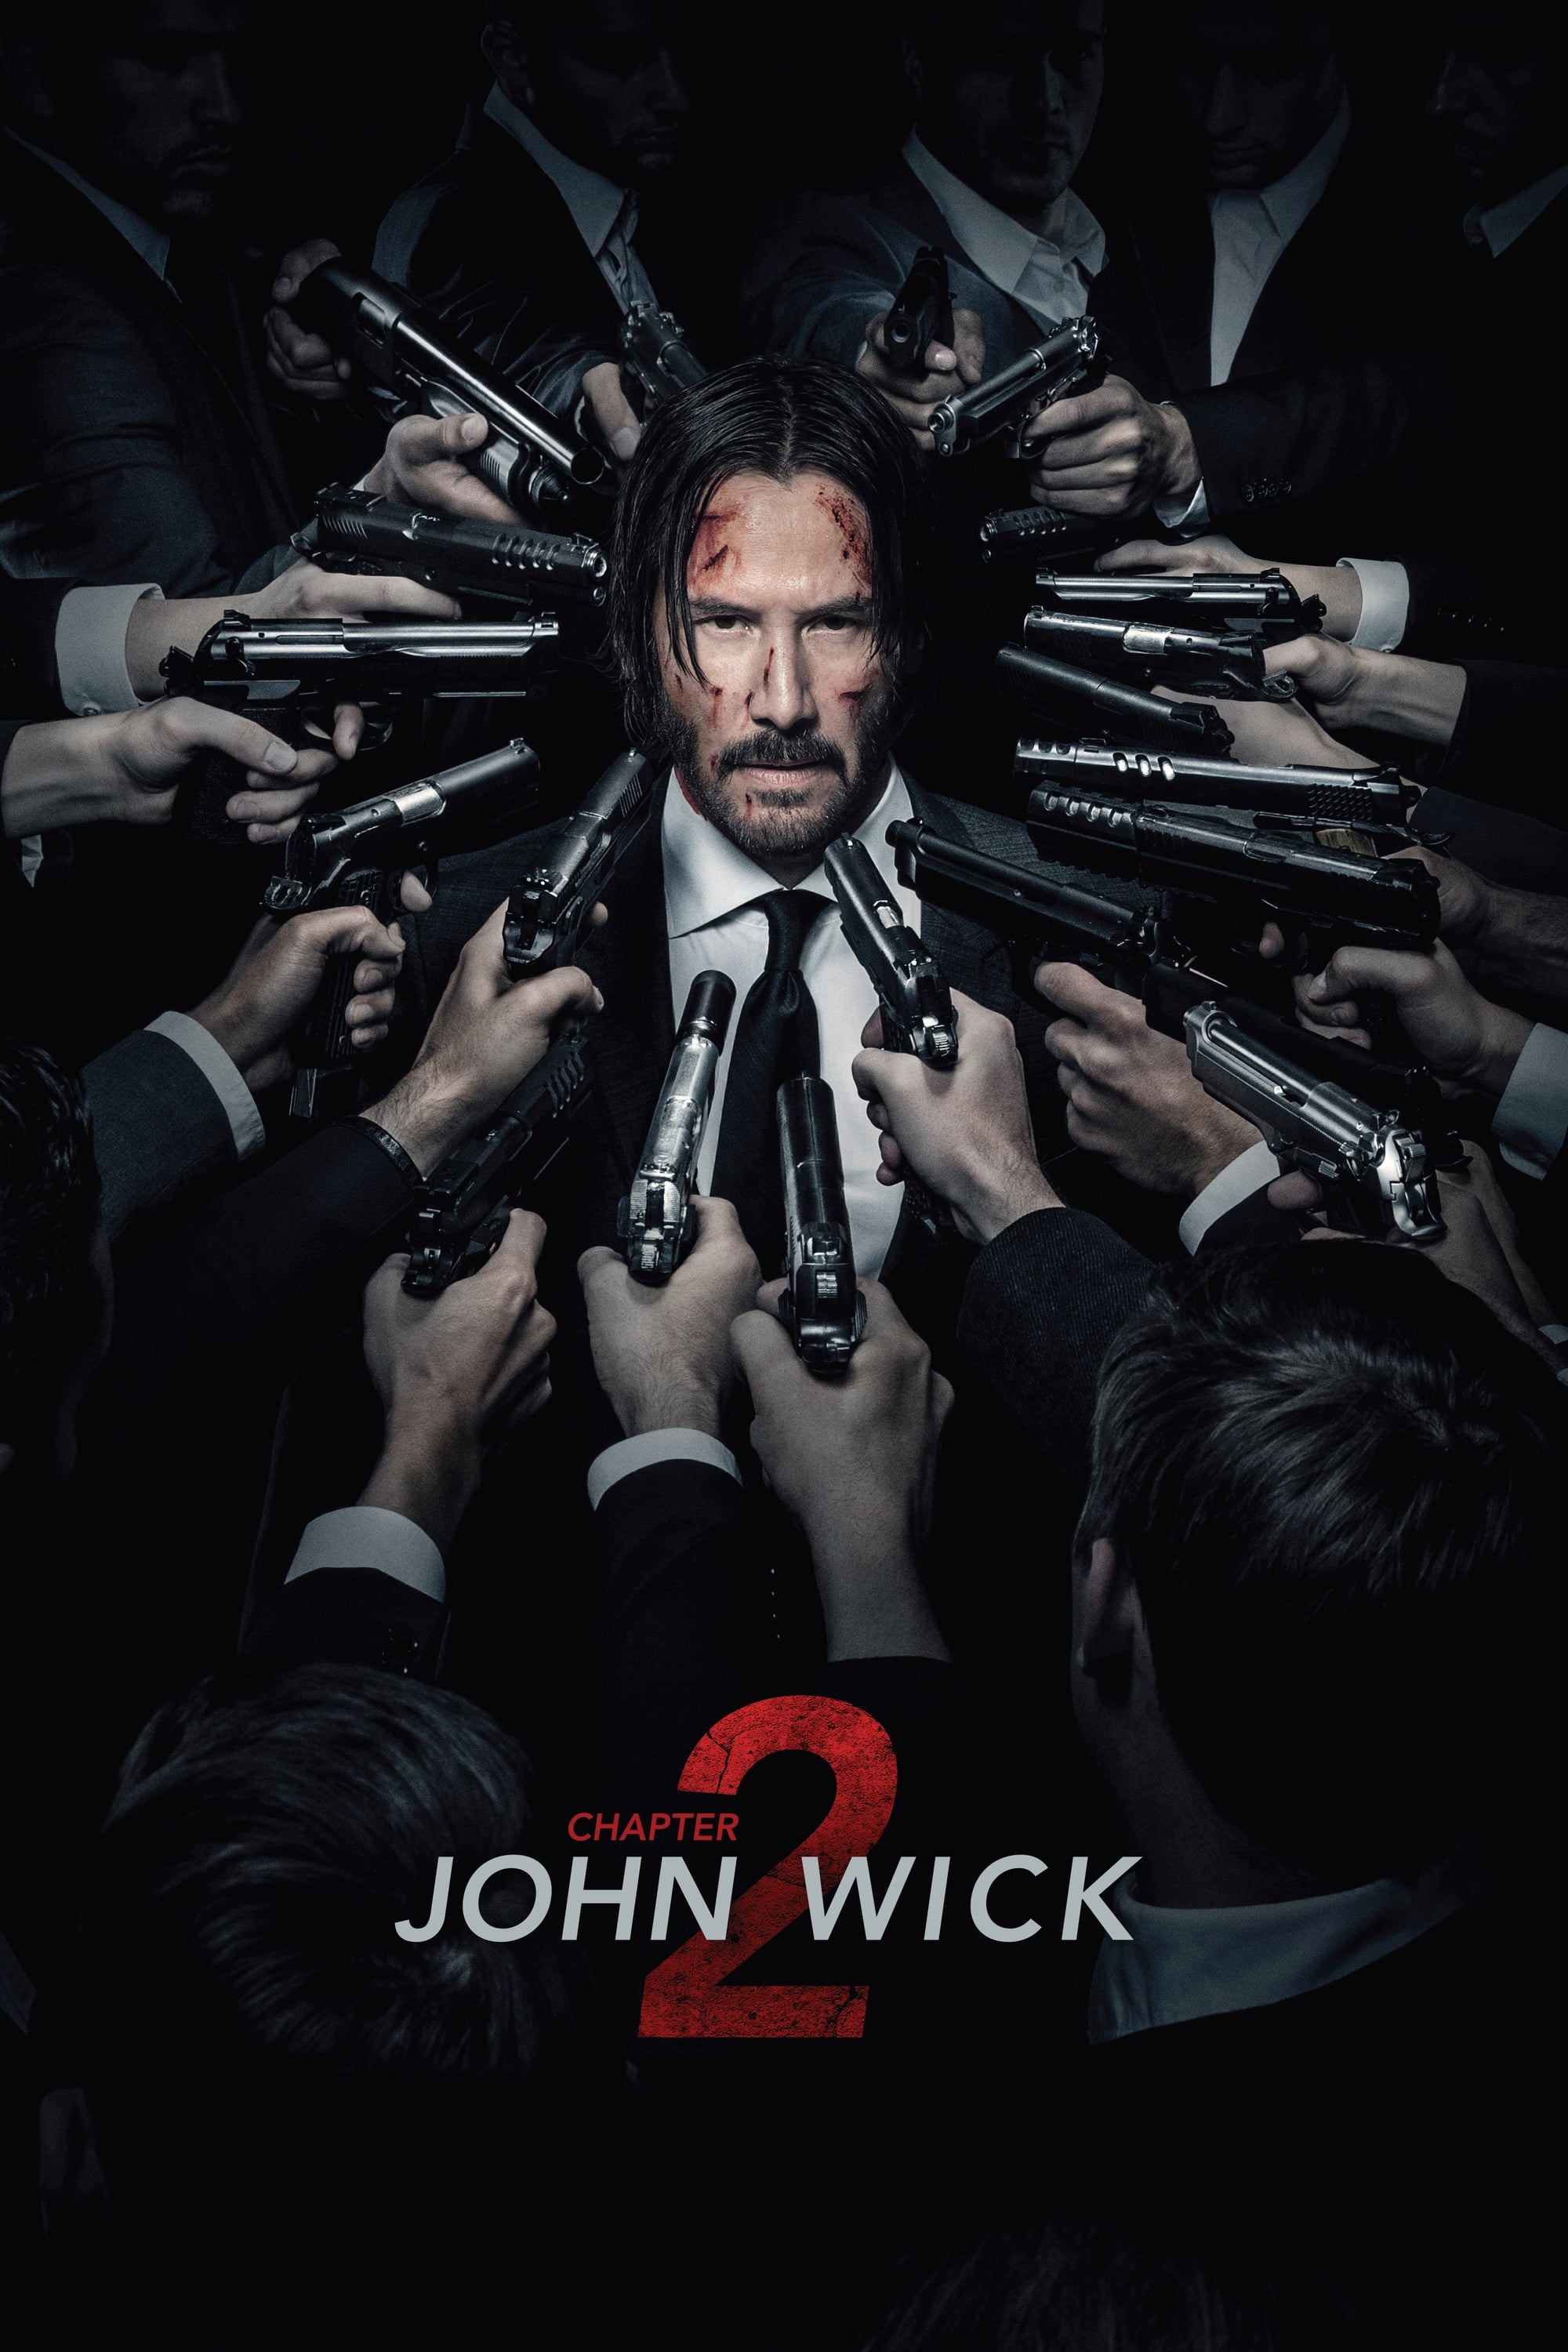 John Wick: Kapitel 2 (2017)